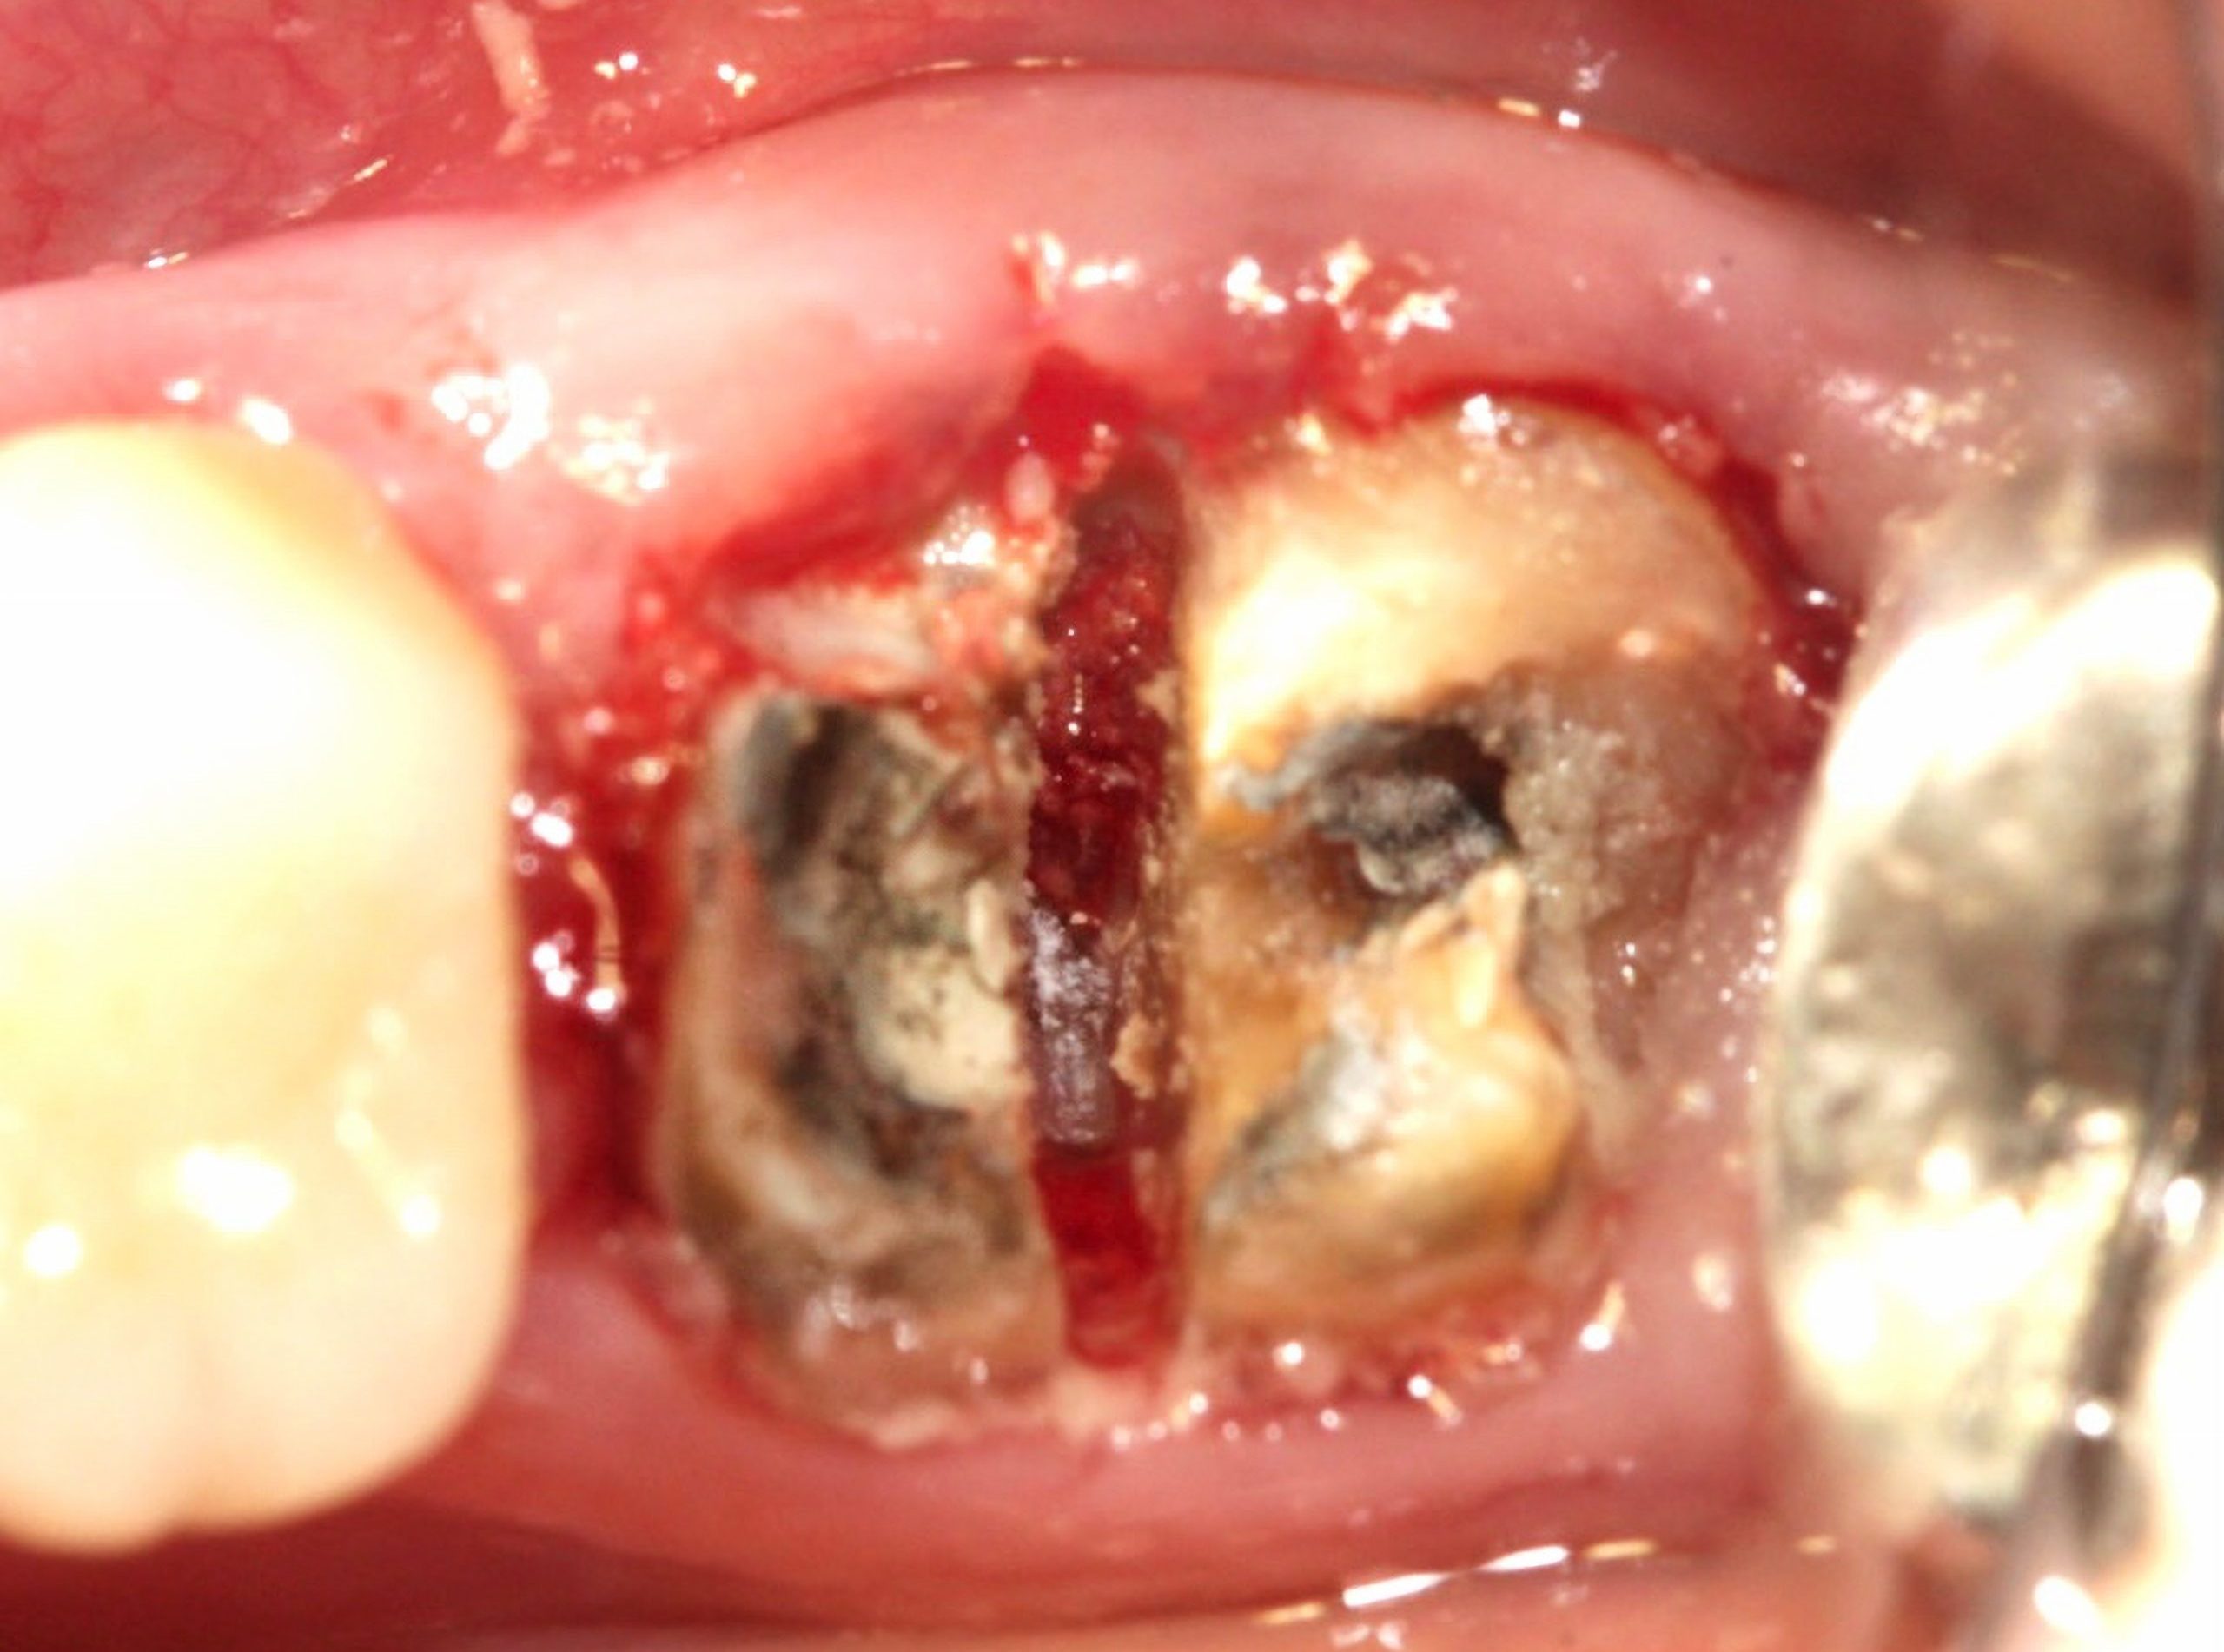 Odontoseccao scaled e1705601349806 - Implante Imediato Arcsys em molar inferior